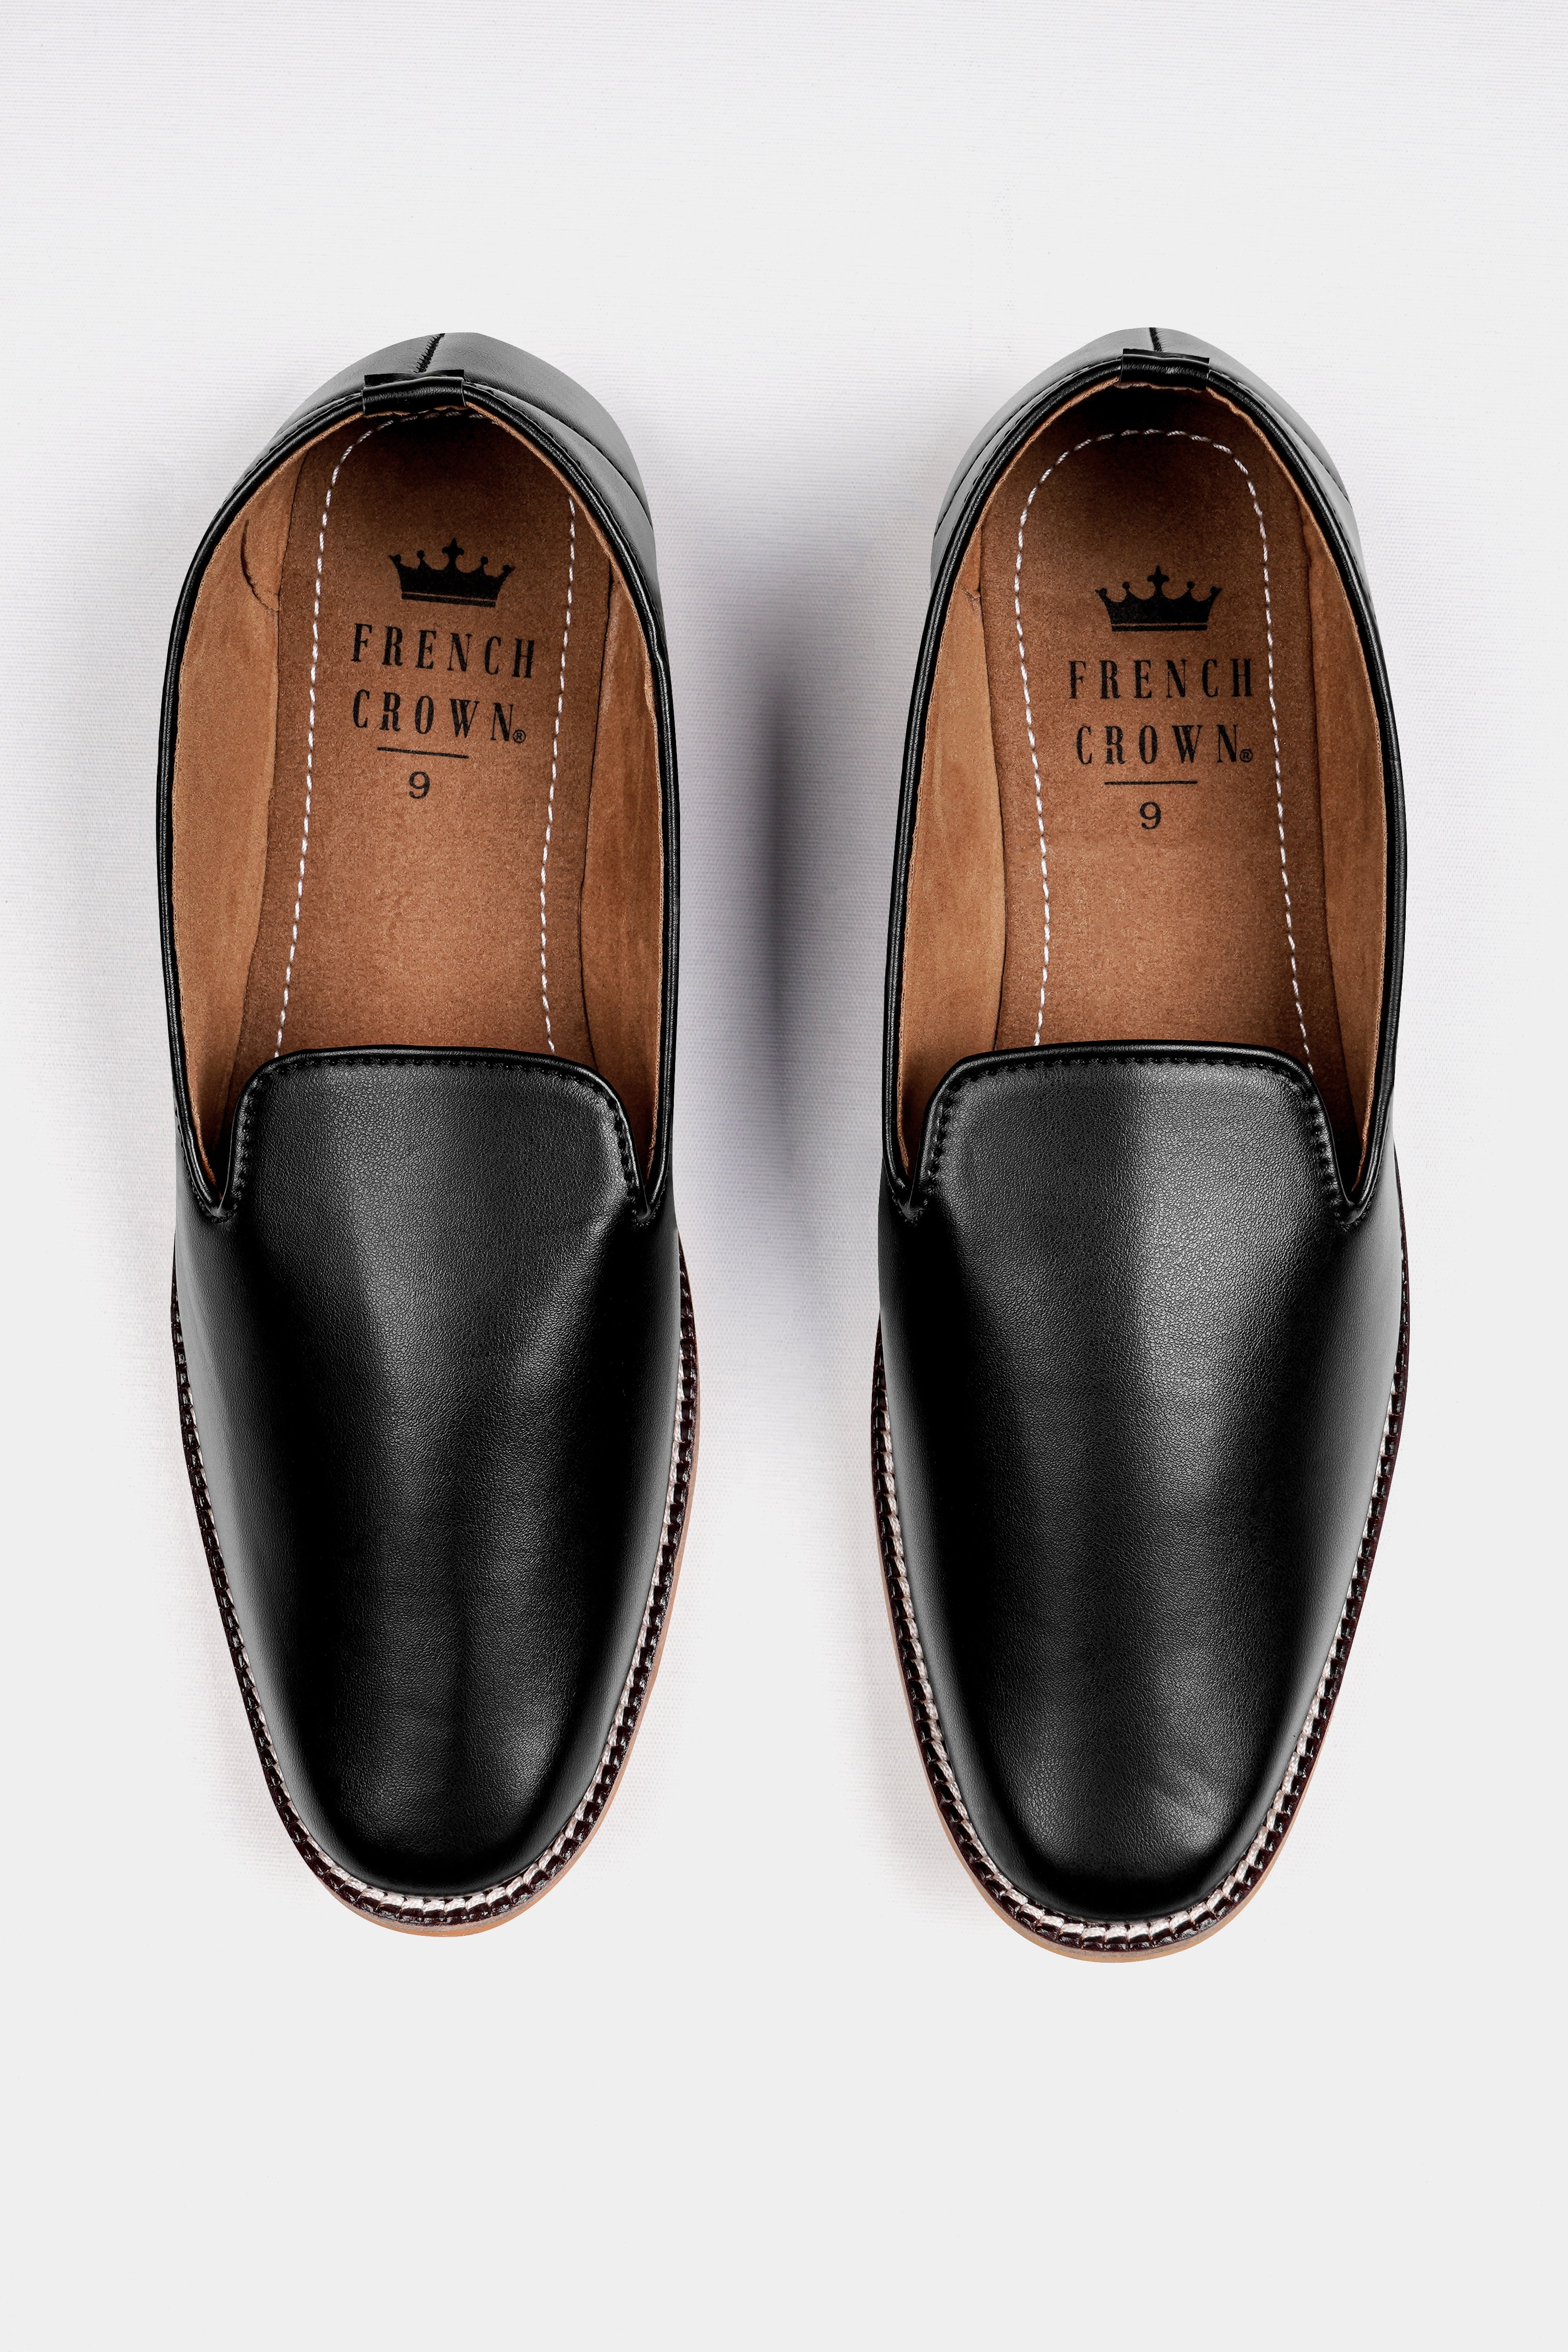 Jade Black Vegan Leather Hand Stitched Mojri Slip-On Shoes FT148-6, FT148-7, FT148-8, FT148-9, FT148-10, FT148-11